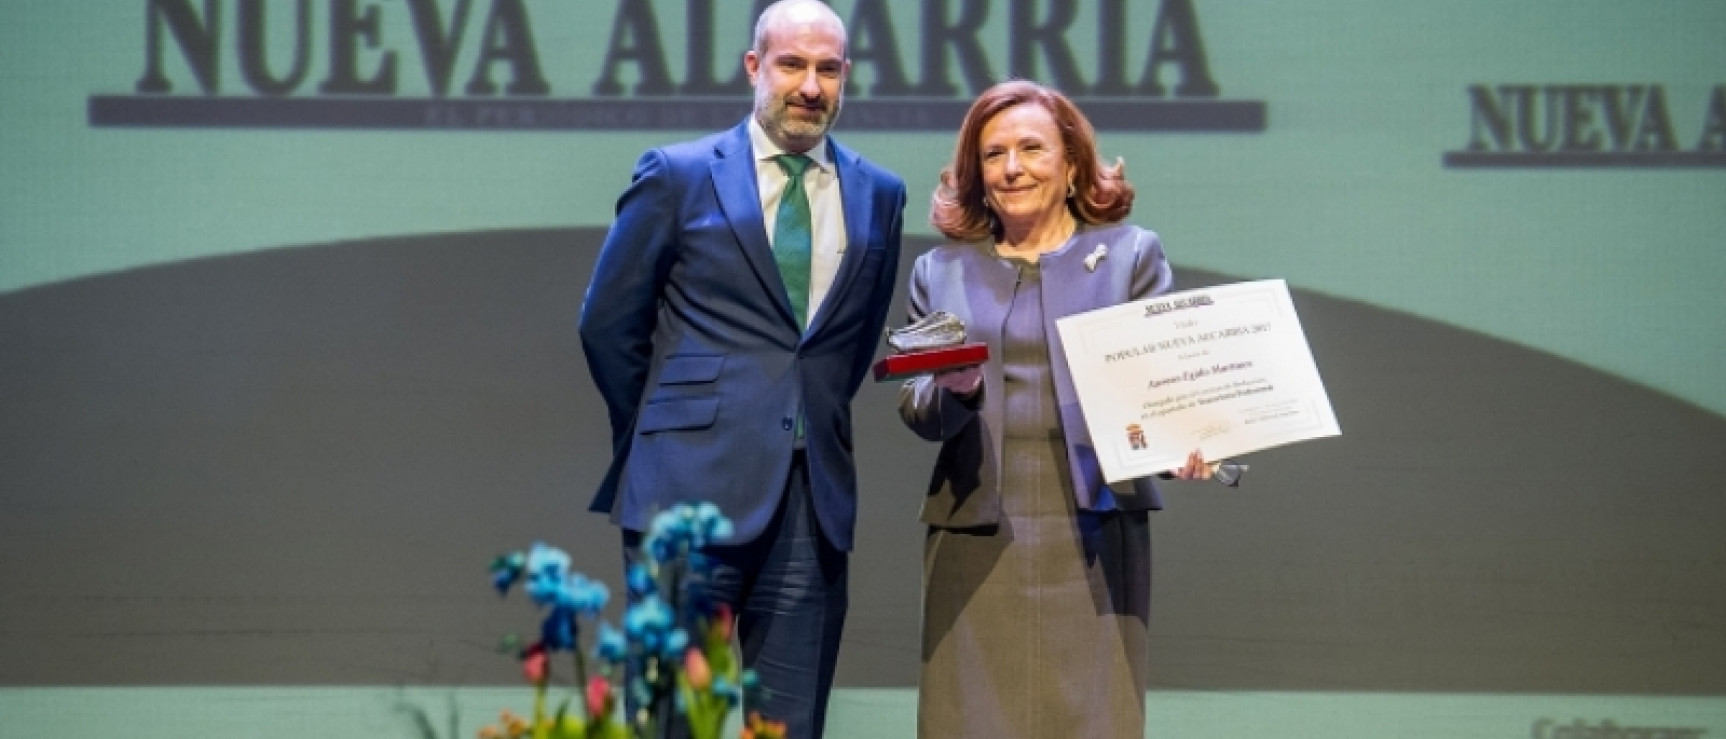 Aurora Egido distinguida con el Premio Popular Nueva Alcarria 2017. © Rafael Martín – Nueva Alcarria